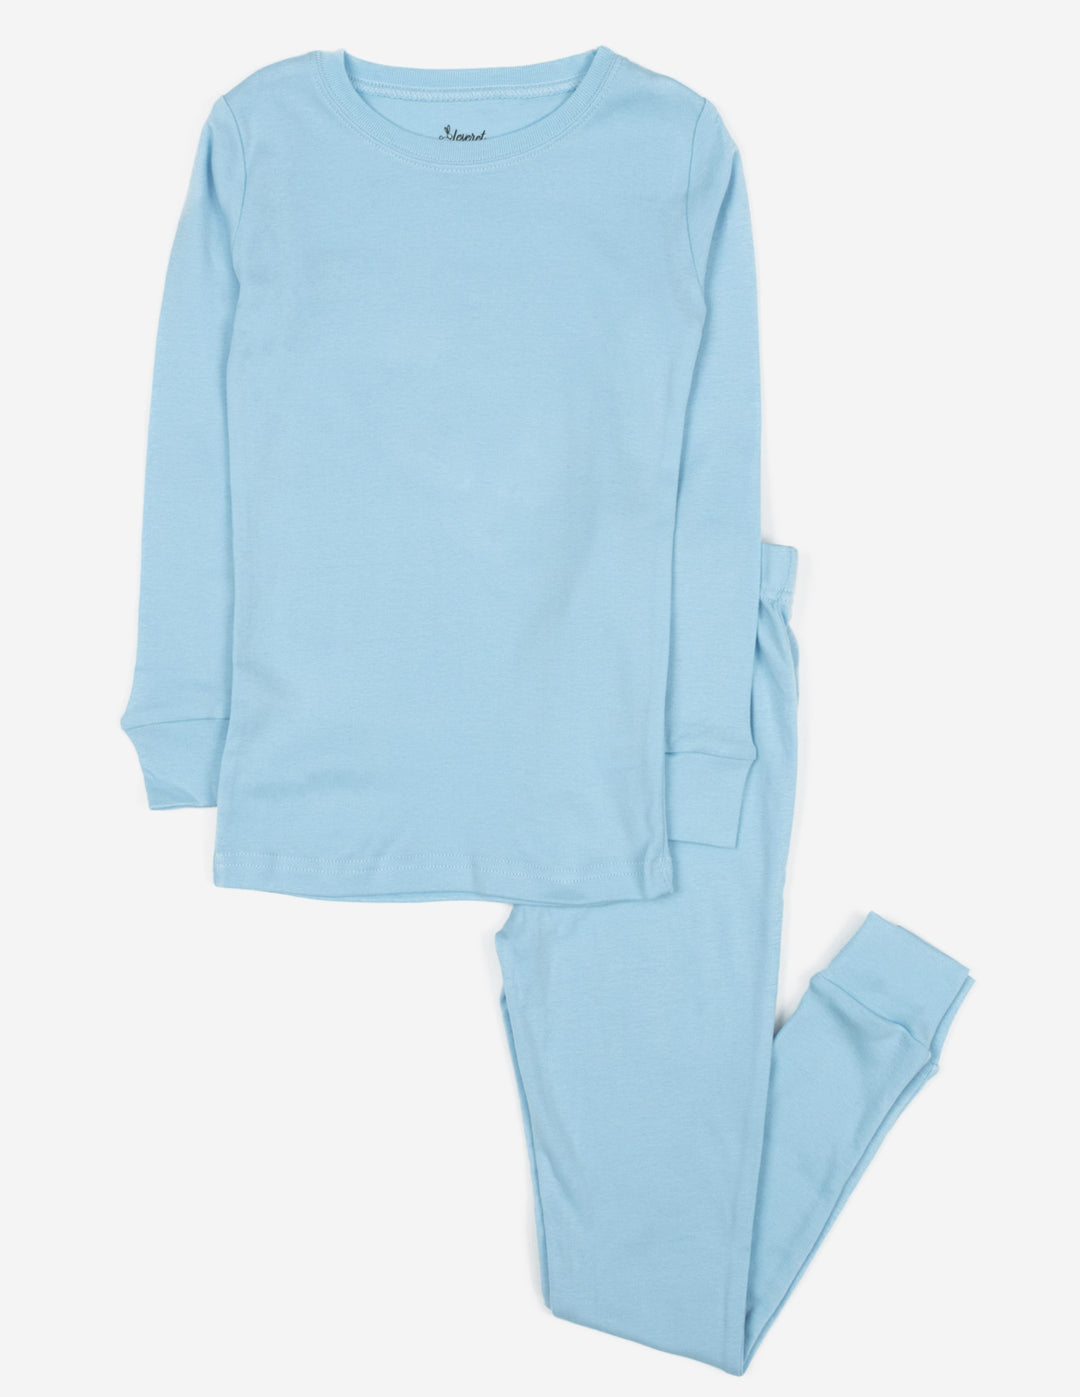 solid color light blue kids cotton pajamas